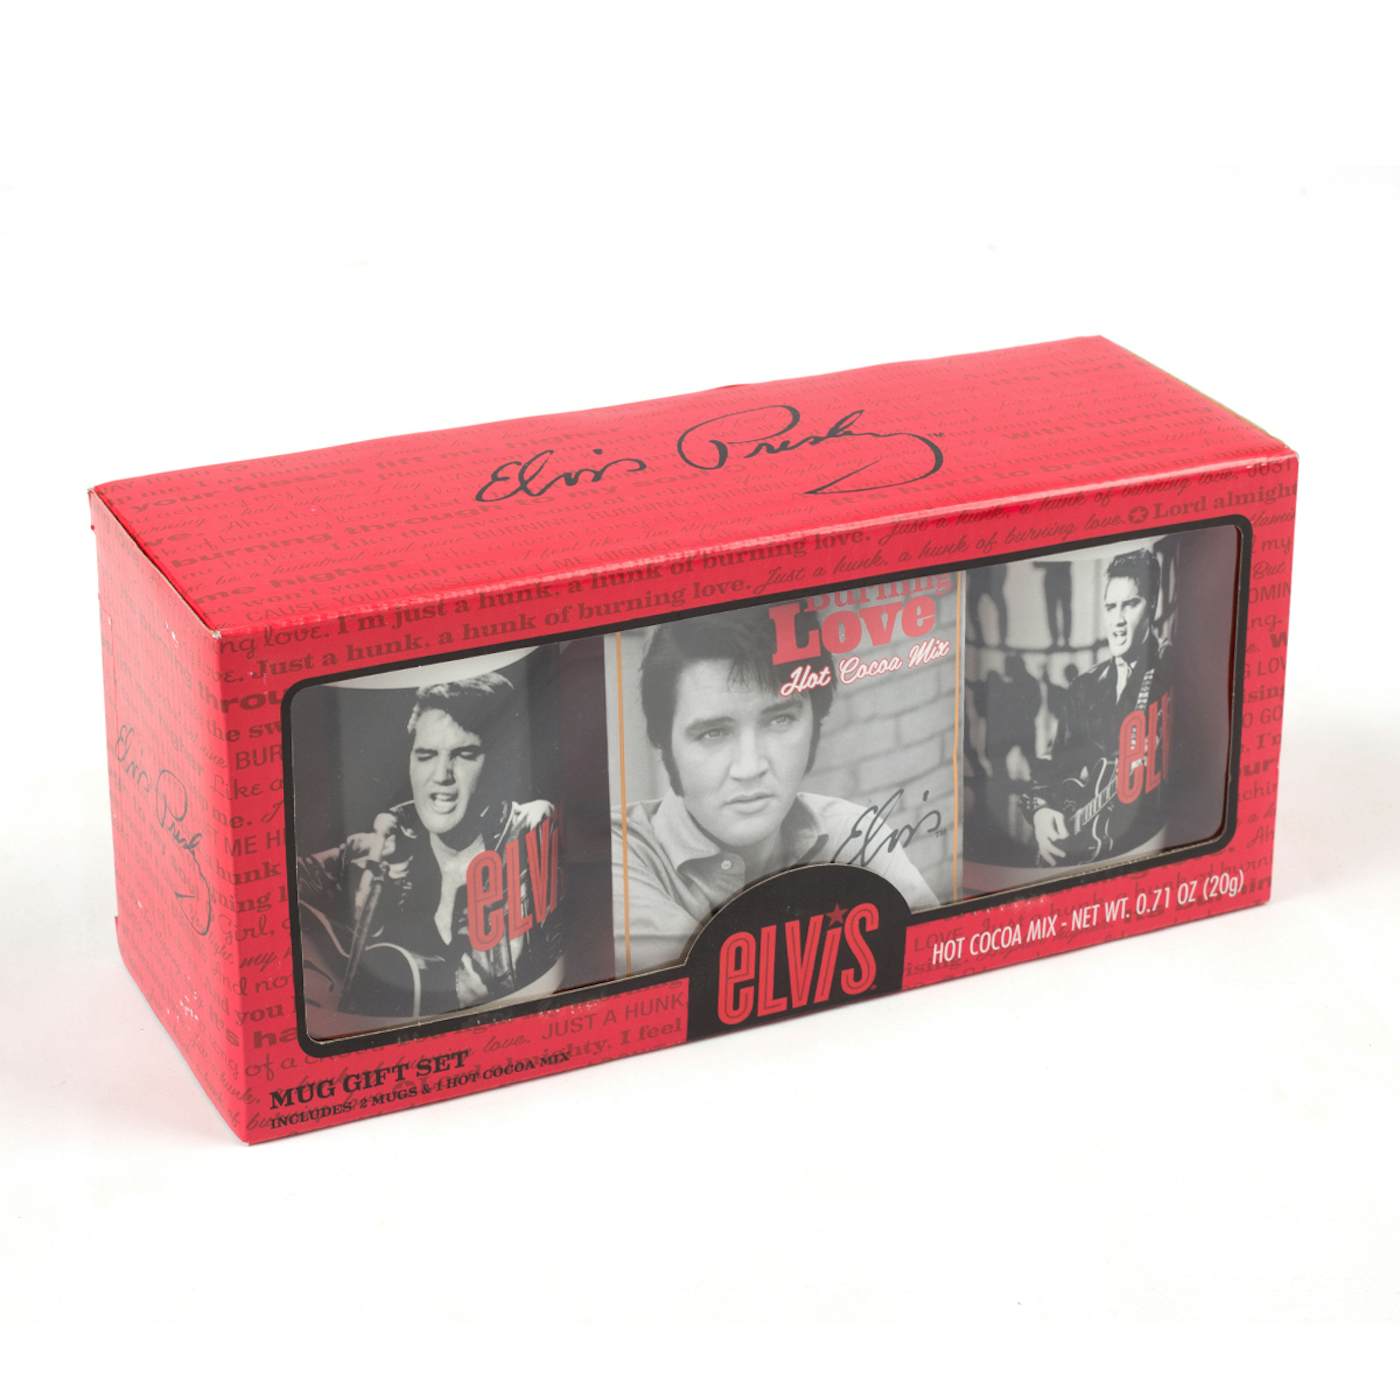 ELVIS Presley -Burning Love Mug Gift Set